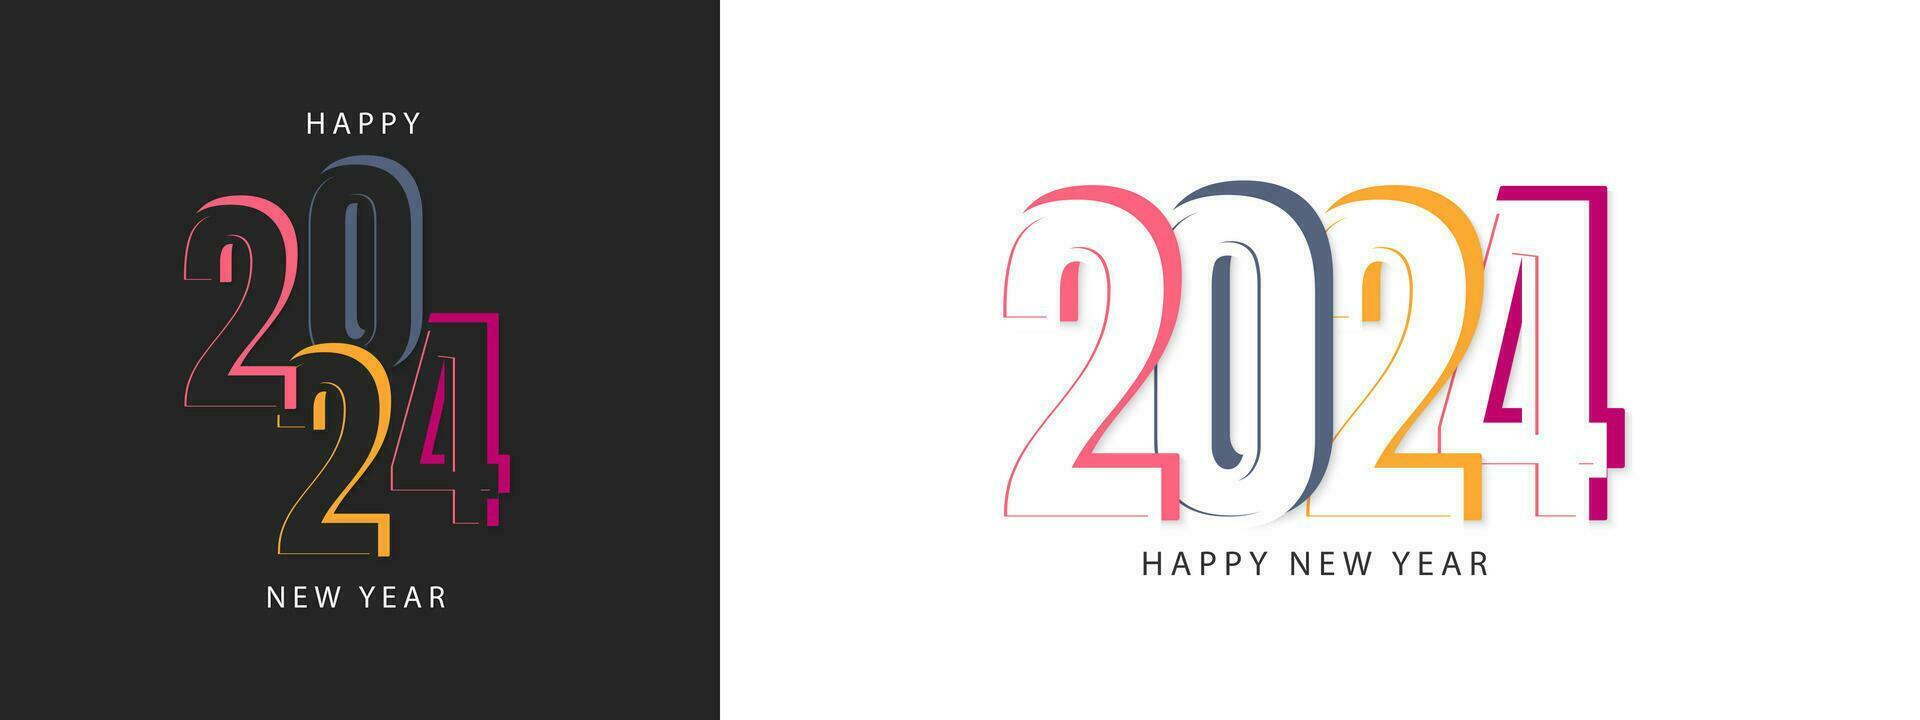 contento nuevo año 2024 diseño. de moda número ilustración diseño. vector modelo para bandera, póster, saludo y nuevo año 2024 celebracion